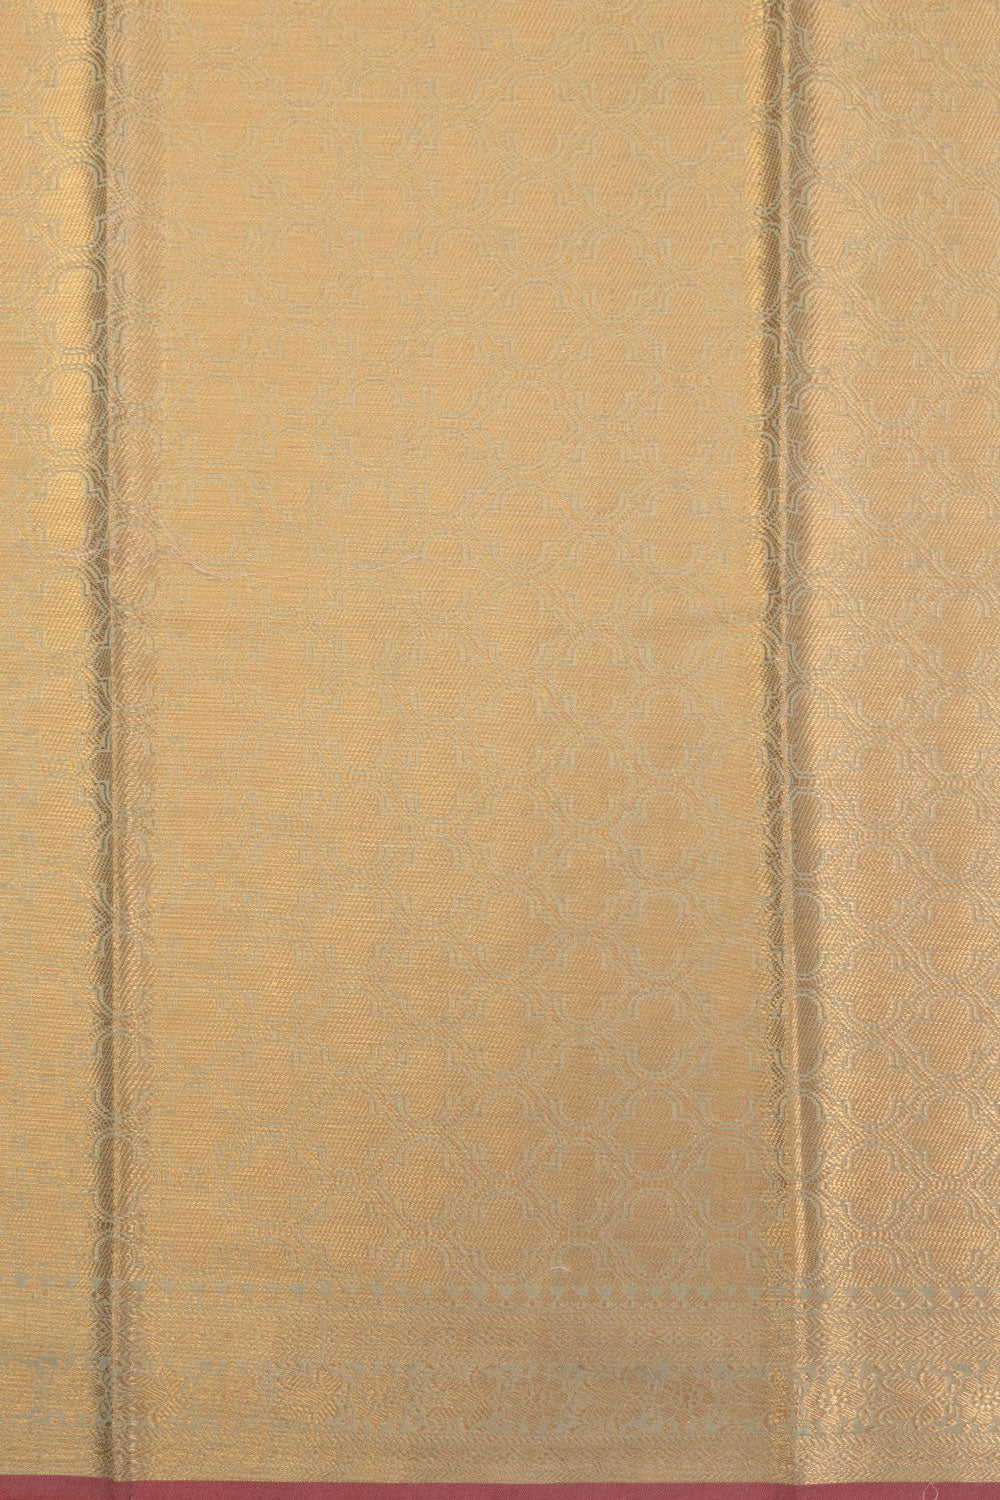 Seige Green Handloom Banarasi Silk Cotton Saree 10070501 - Avishya